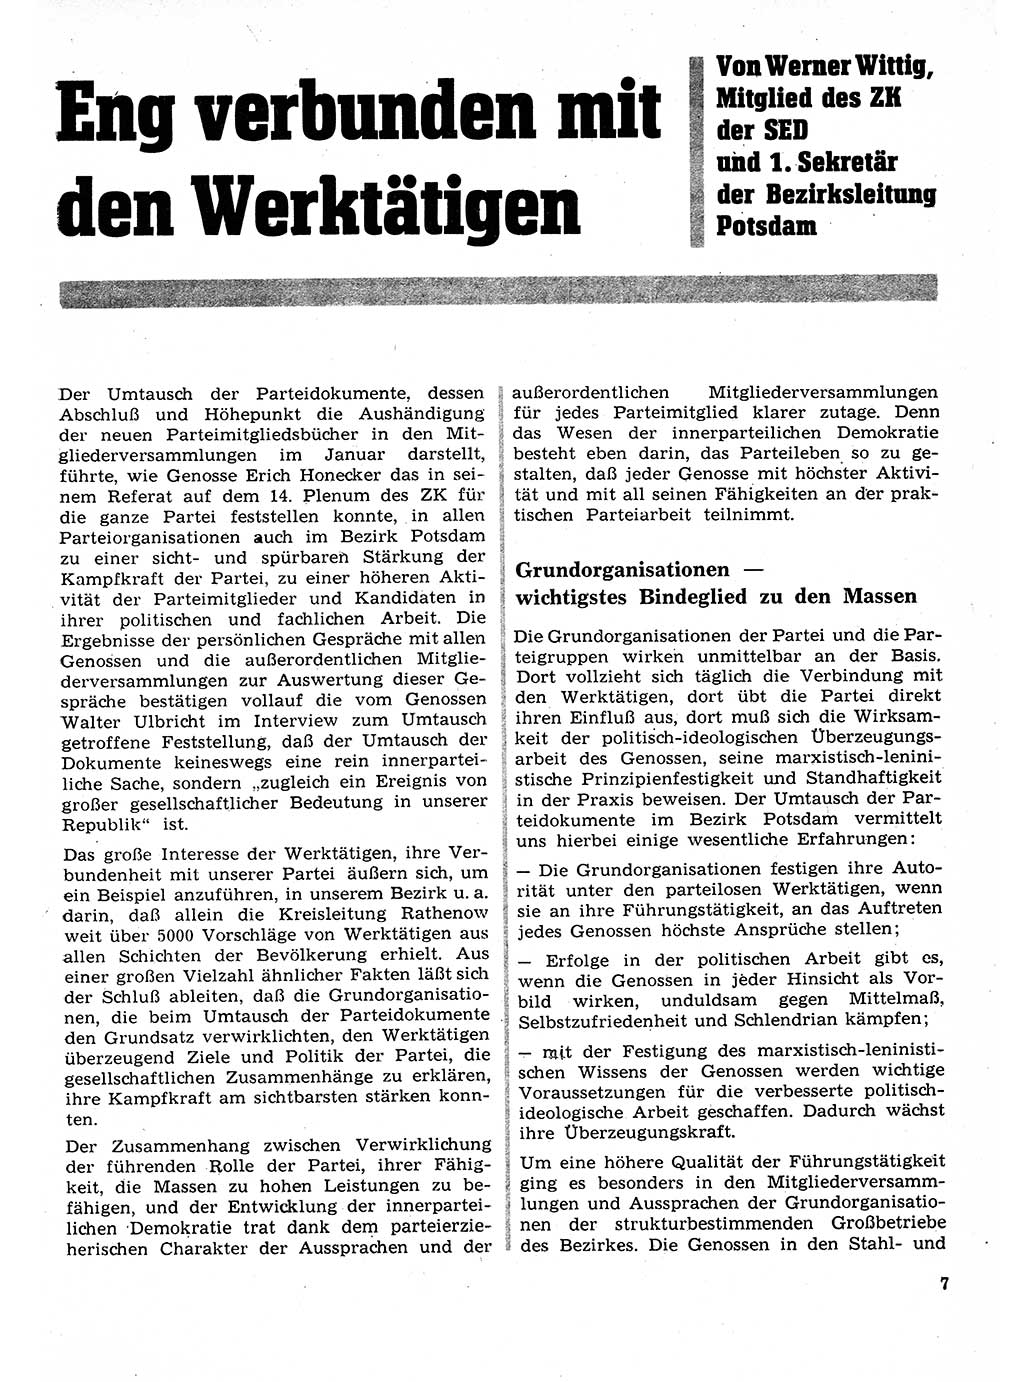 Neuer Weg (NW), Organ des Zentralkomitees (ZK) der SED (Sozialistische Einheitspartei Deutschlands) für Fragen des Parteilebens, 26. Jahrgang [Deutsche Demokratische Republik (DDR)] 1971, Seite 7 (NW ZK SED DDR 1971, S. 7)